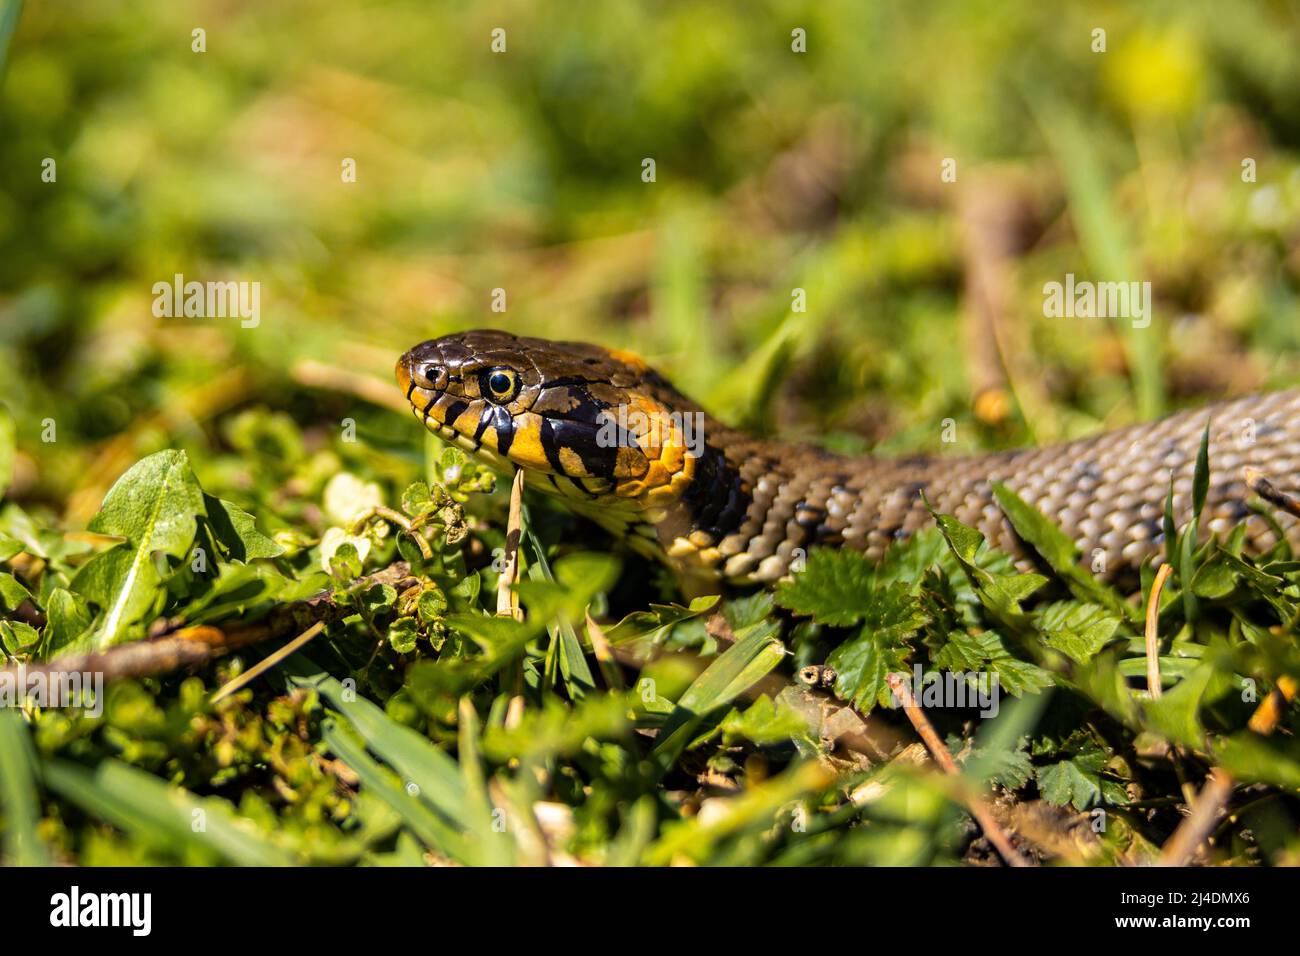 Serpent non venimeux à herbe commune sur un champ d'herbe au soleil. La langue noire des serpents est sortie. Photo macro d'un serpent. Photo de haute qualité Banque D'Images